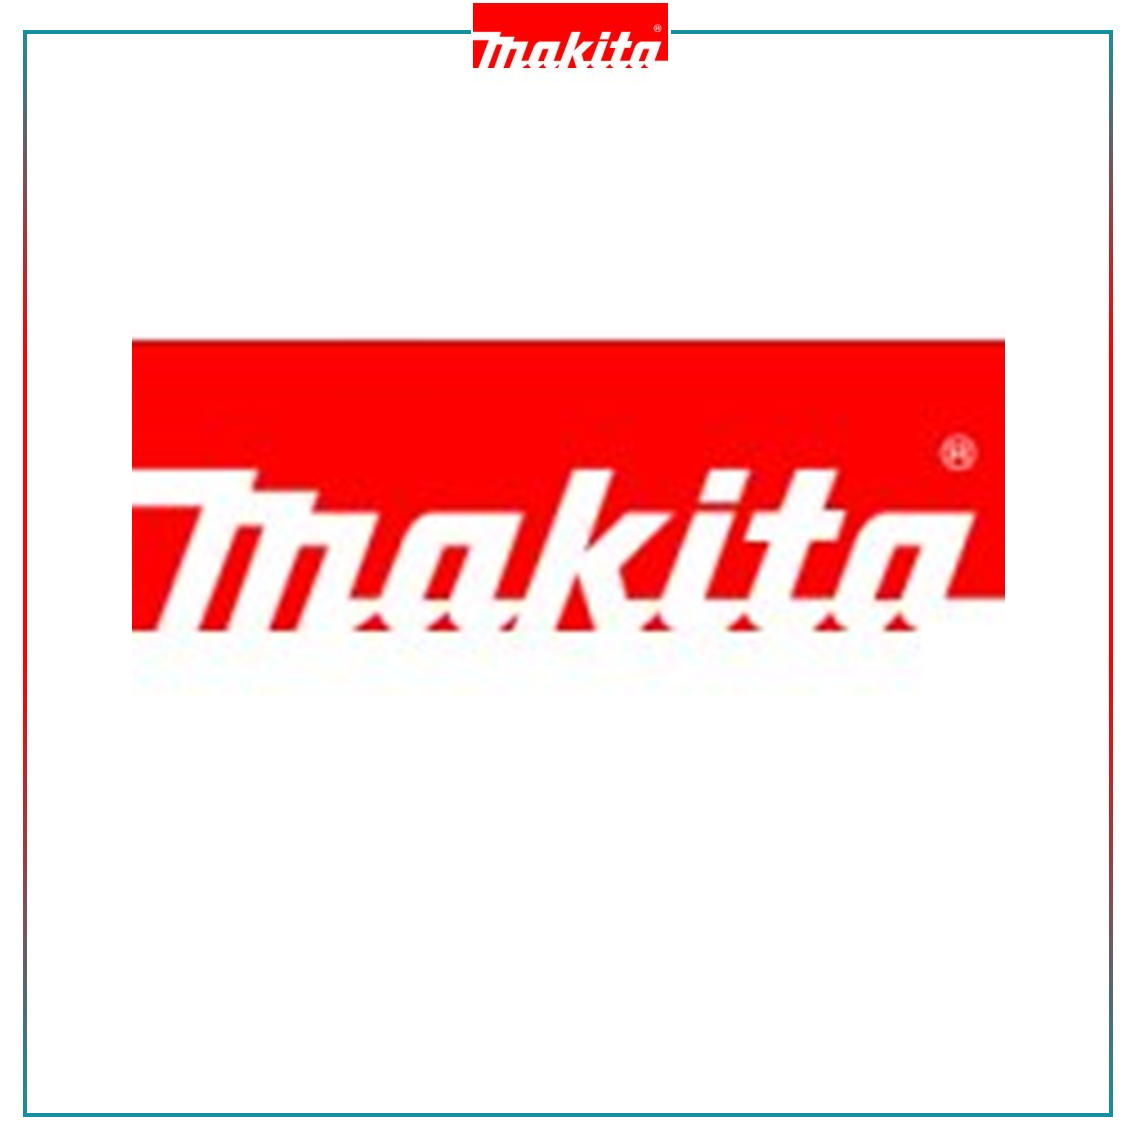 MAKITA - Catalogue Catalogue